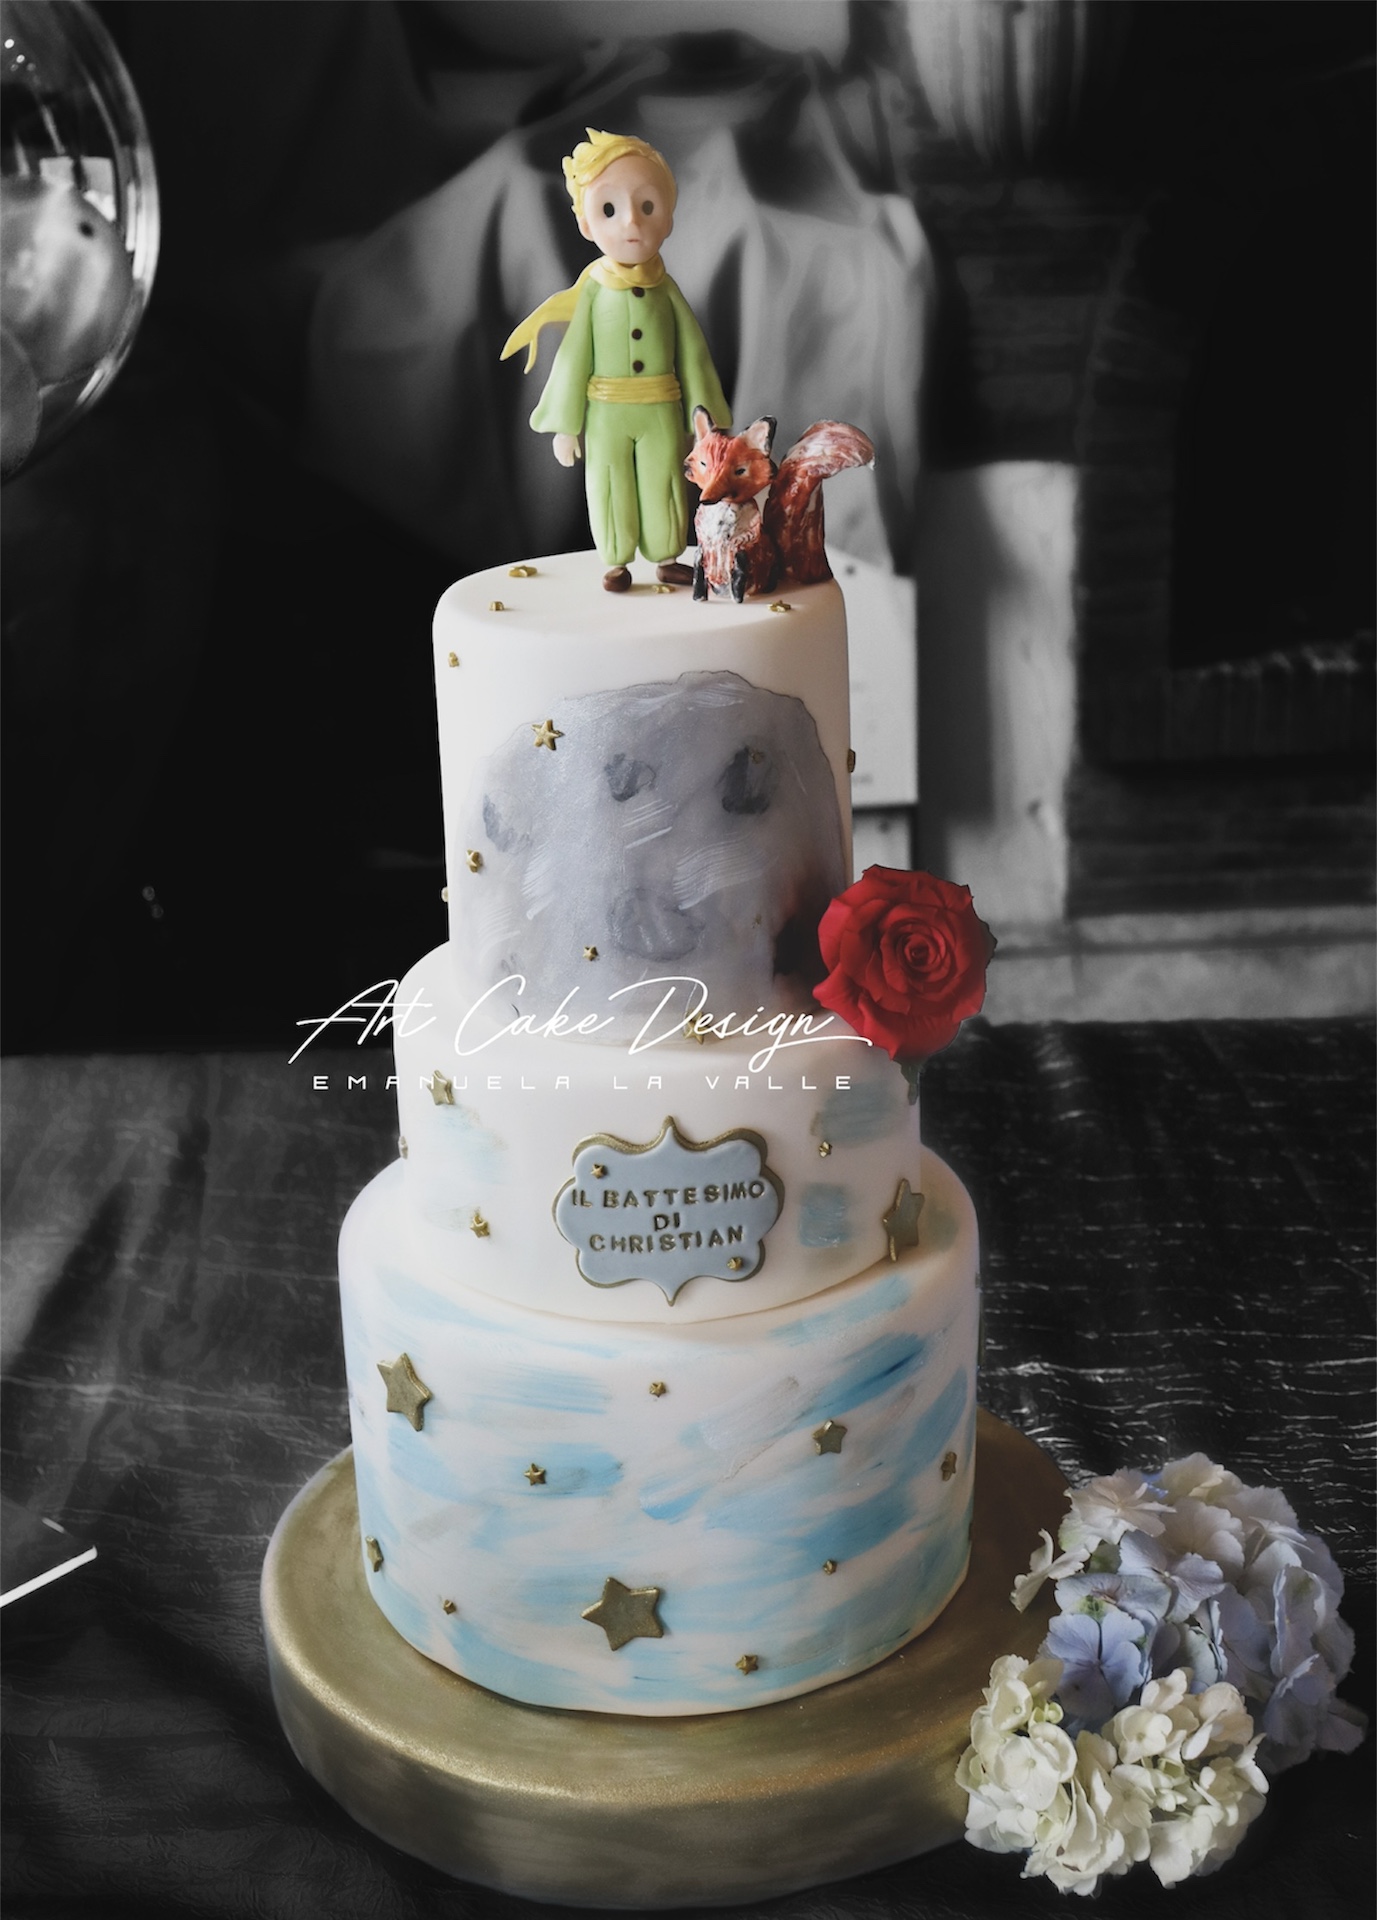 Torta piccolo principe - little prince cake